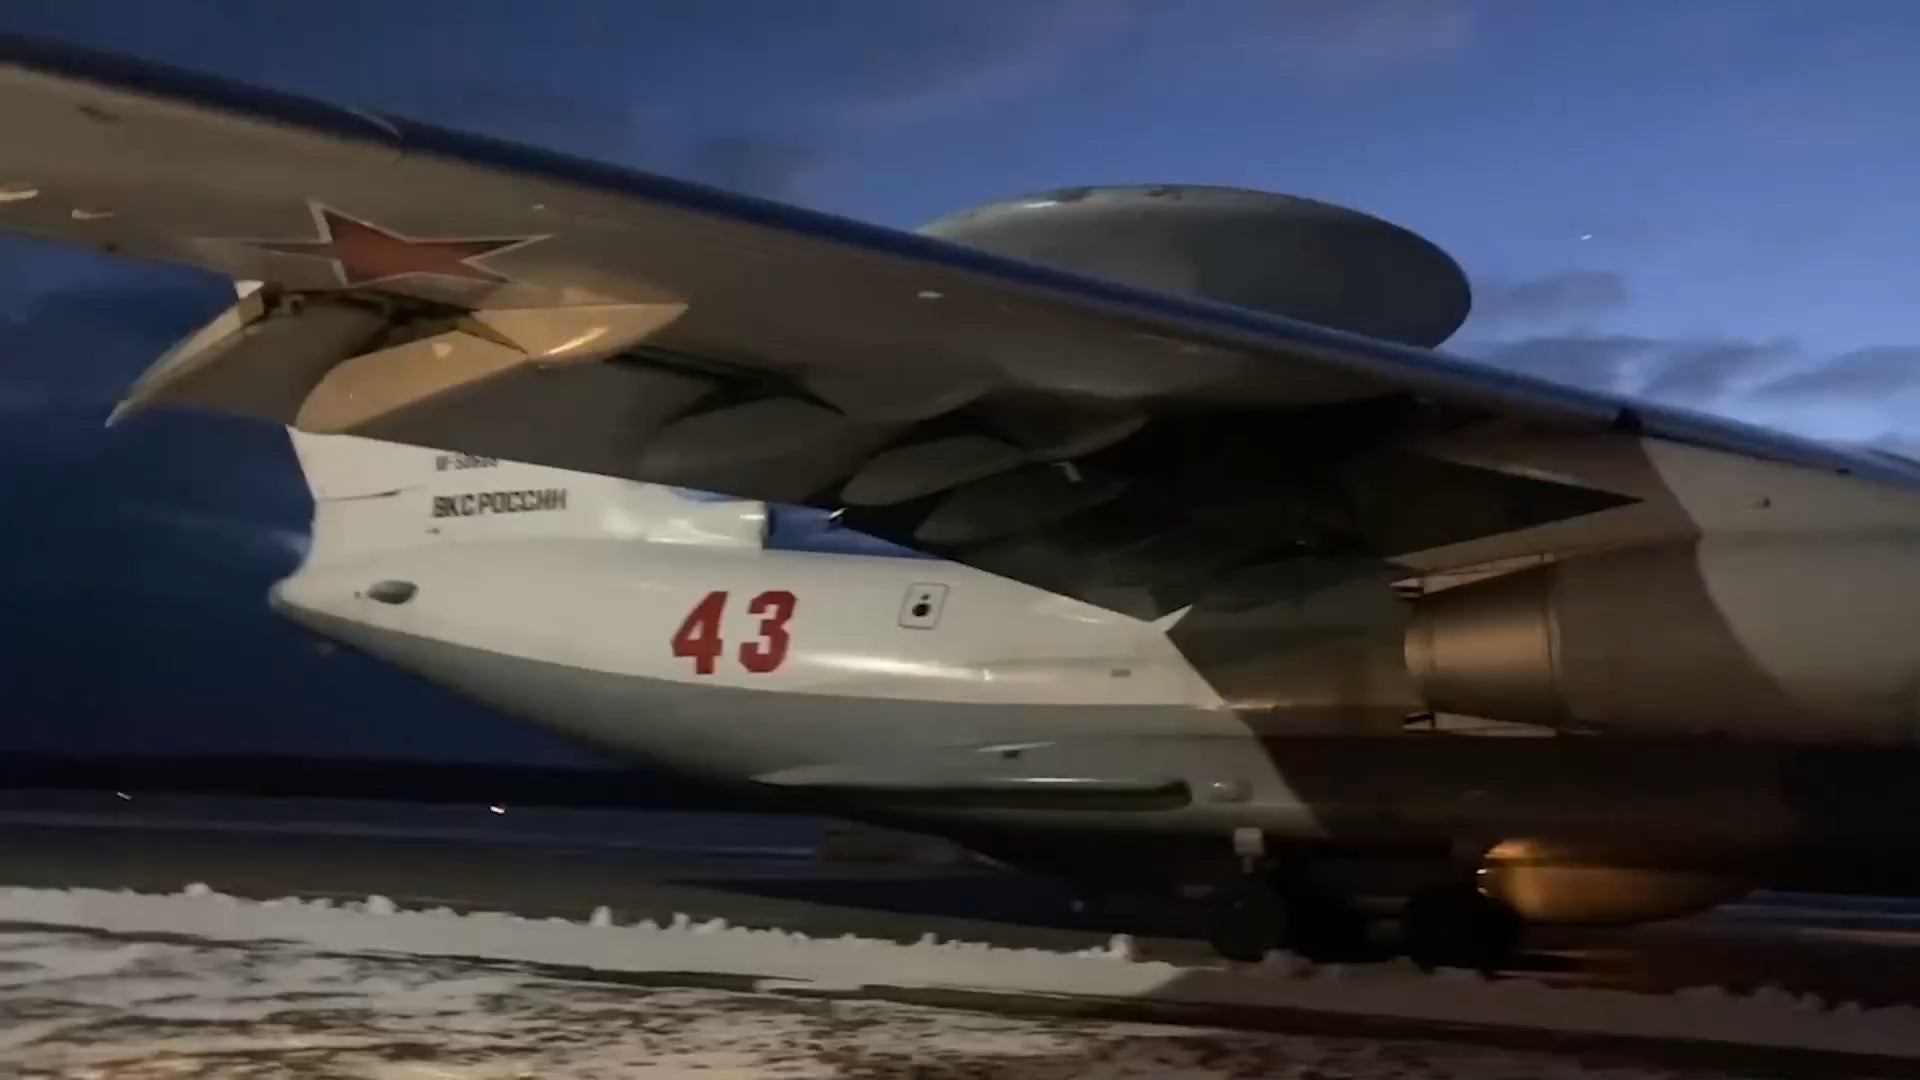 Chiếc A-50 mang số hiệu 43 xuất hiện trong video.